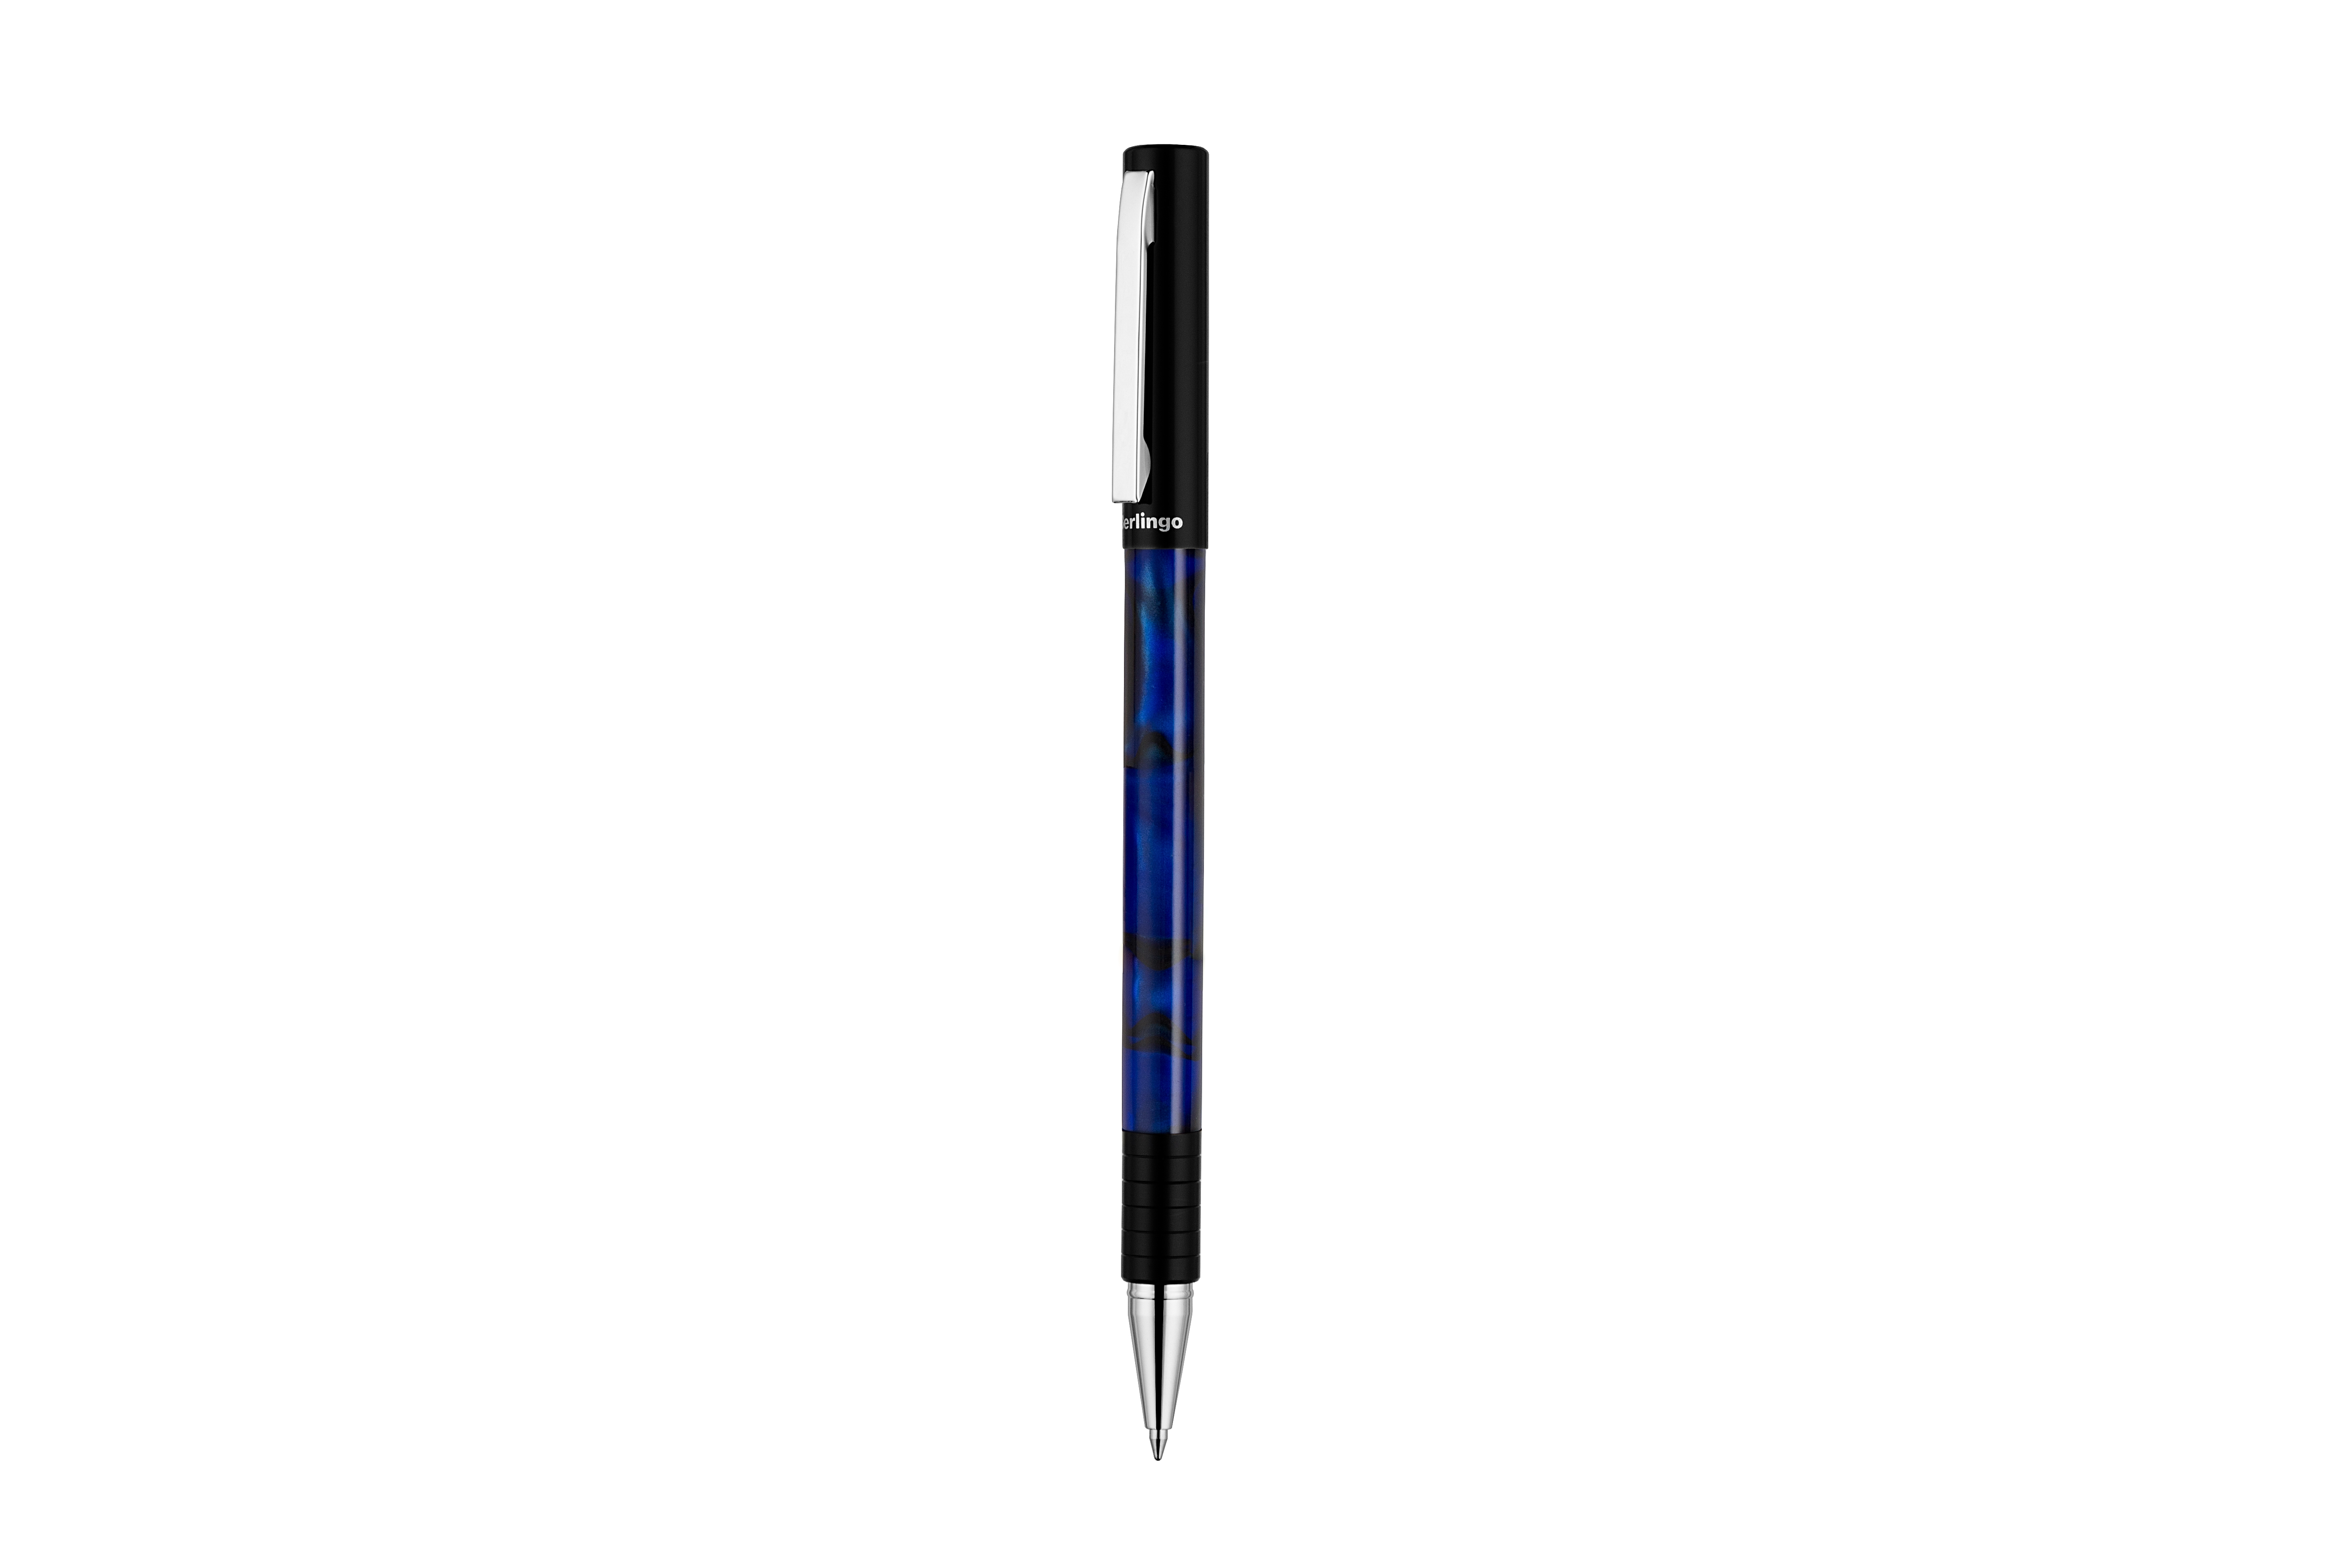 Ручка шариковая подарочная Berlingo "Fantasy" синяя, 0,7мм, корпус: синий акрил